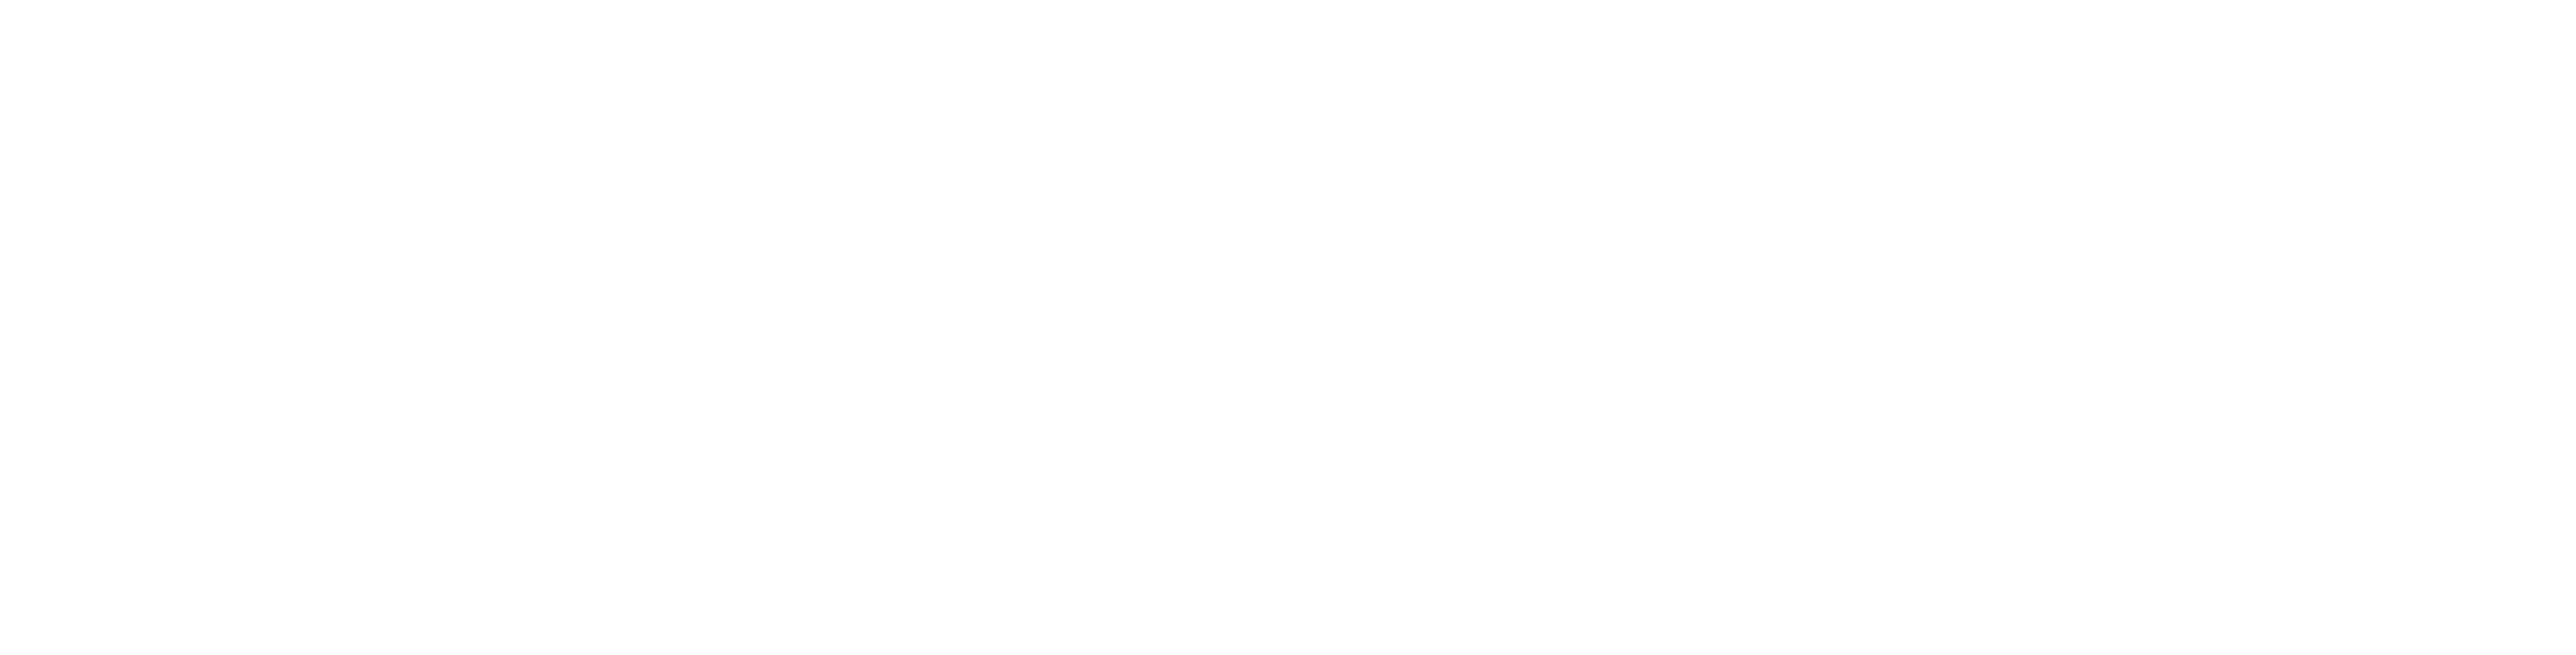 Inventum Technologies logo